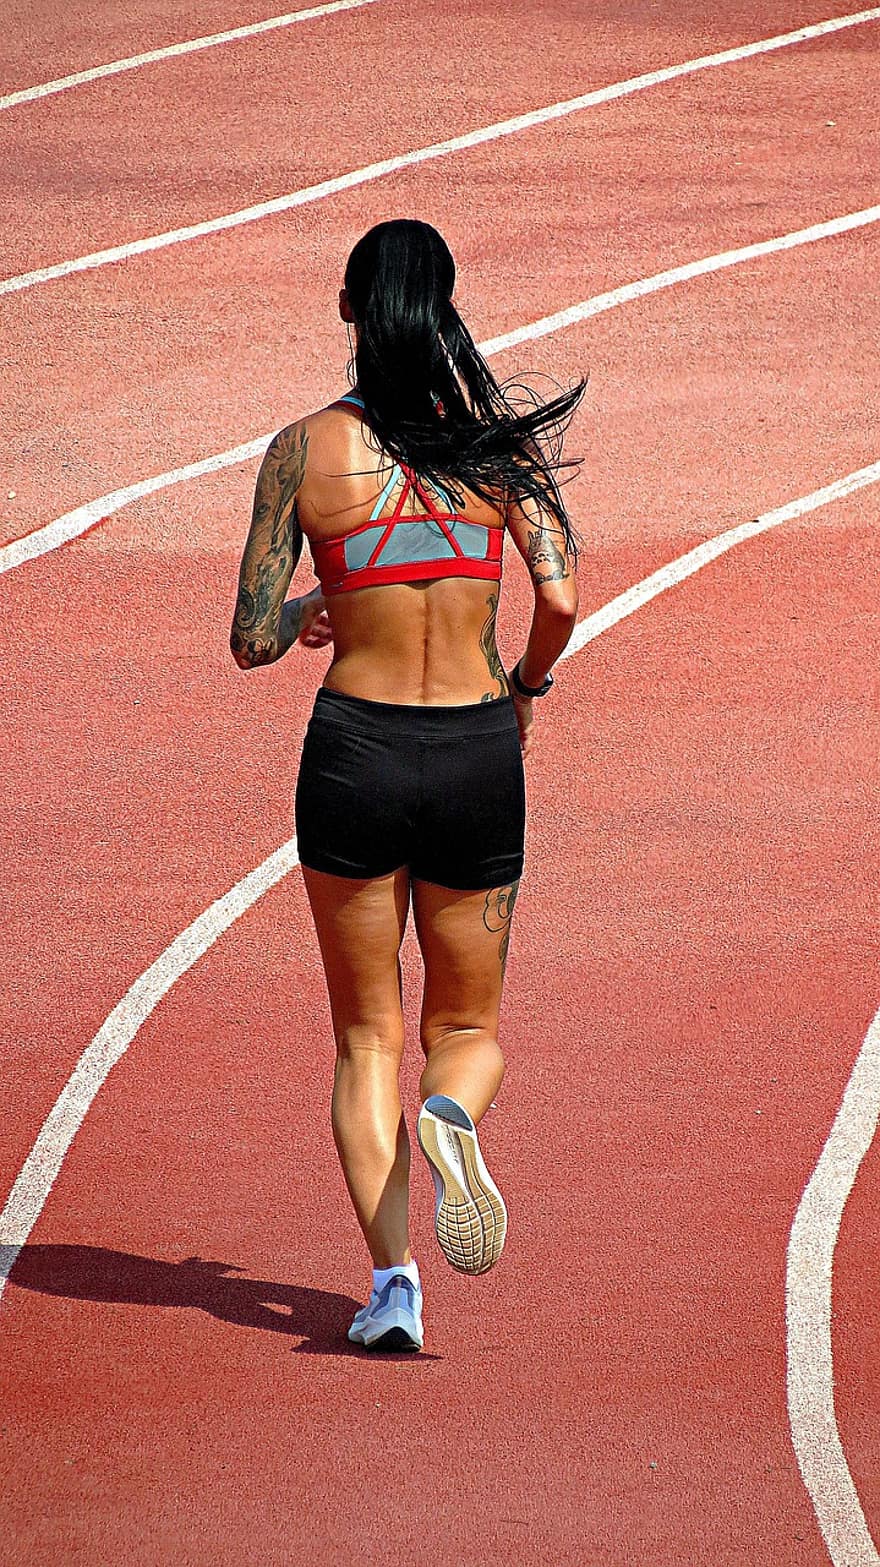 paleisti, tinkamumas, bėgių takas, moteris, sportas, sveikata, pratimas, sportuoti, veikia, bėgimas, Sportas